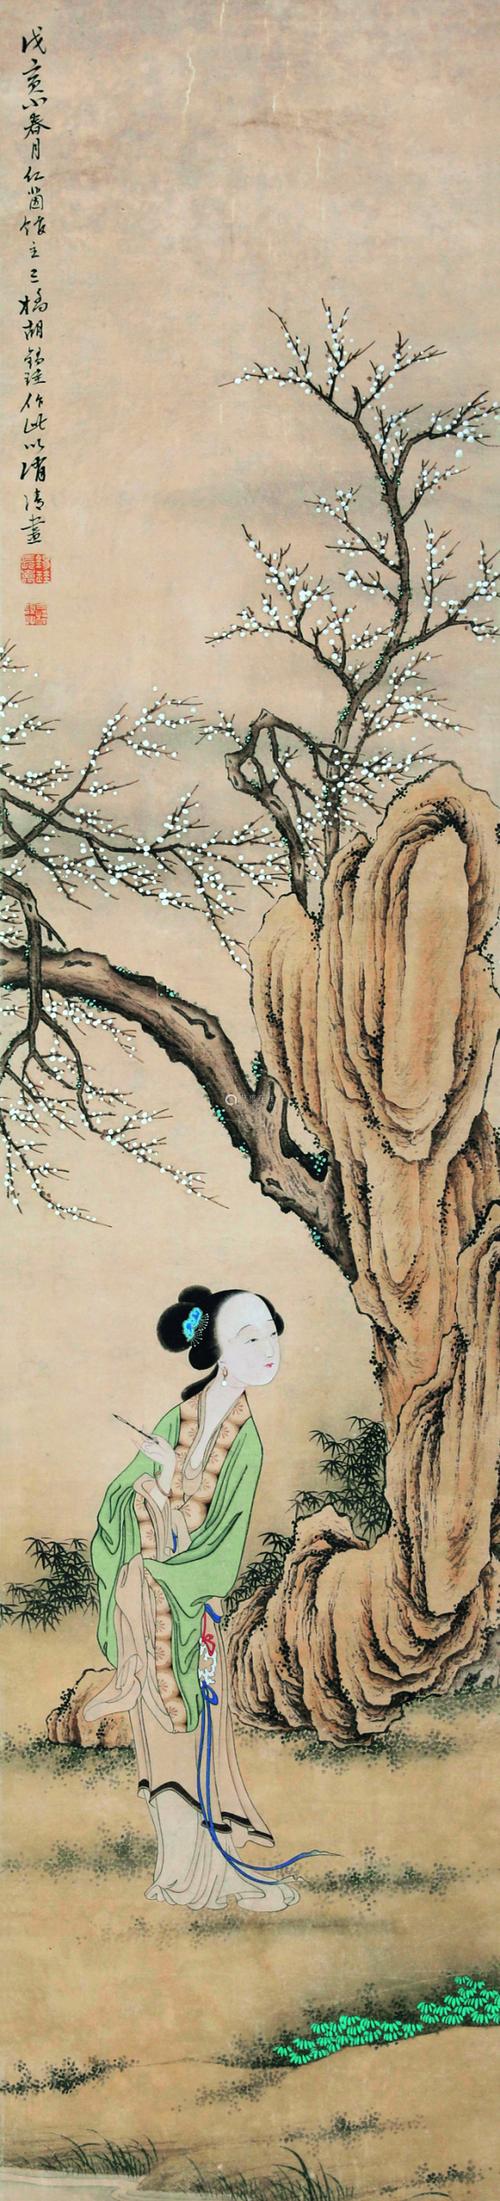 胡锡珪(1839～1883) 侍女人物立轴 水墨纸本